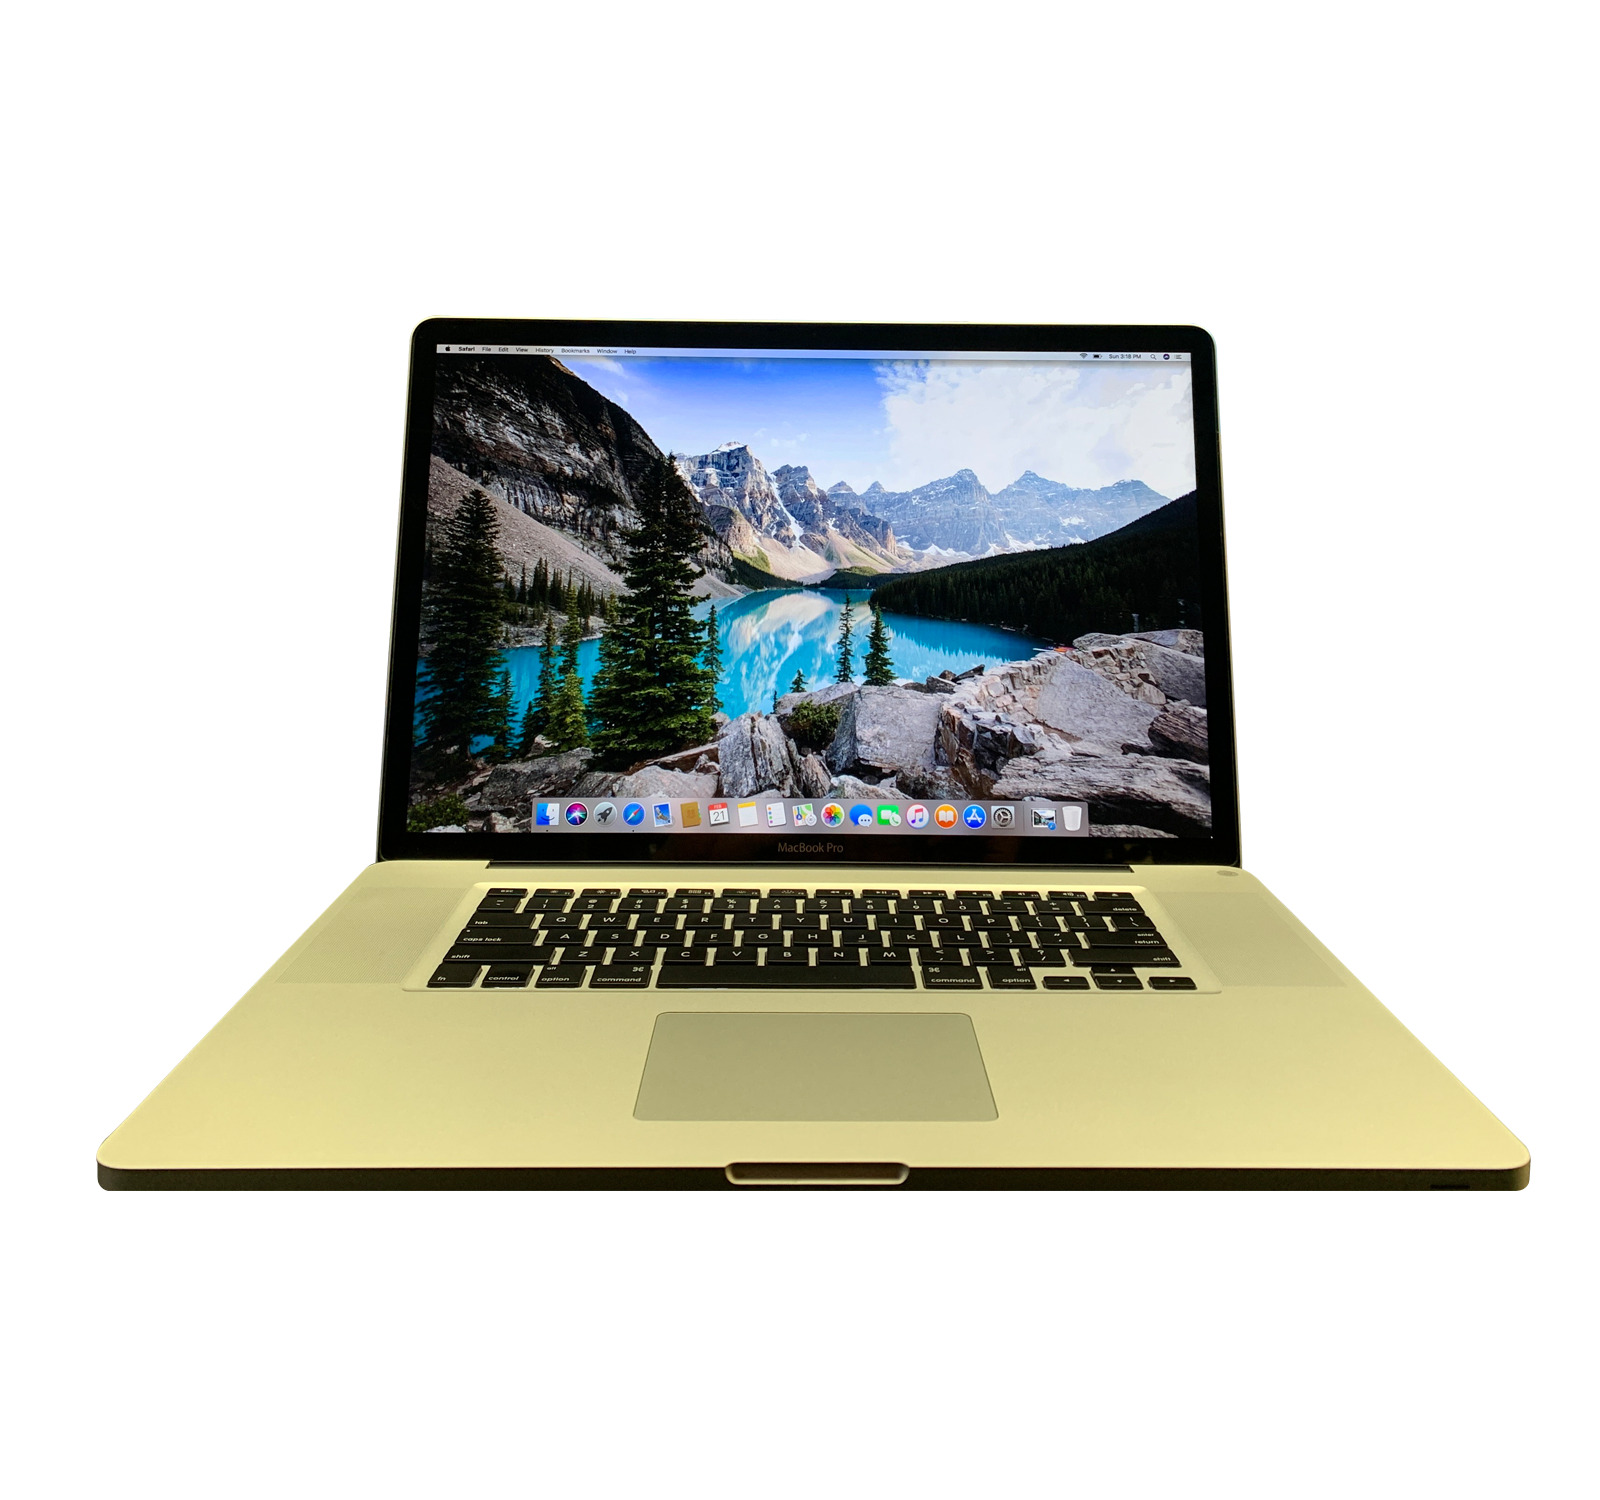 Apple MacBook Pro 17 Laptop / 8GB RAM 500GB HD / INTEL CORE / 3 YEAR WARRANTY